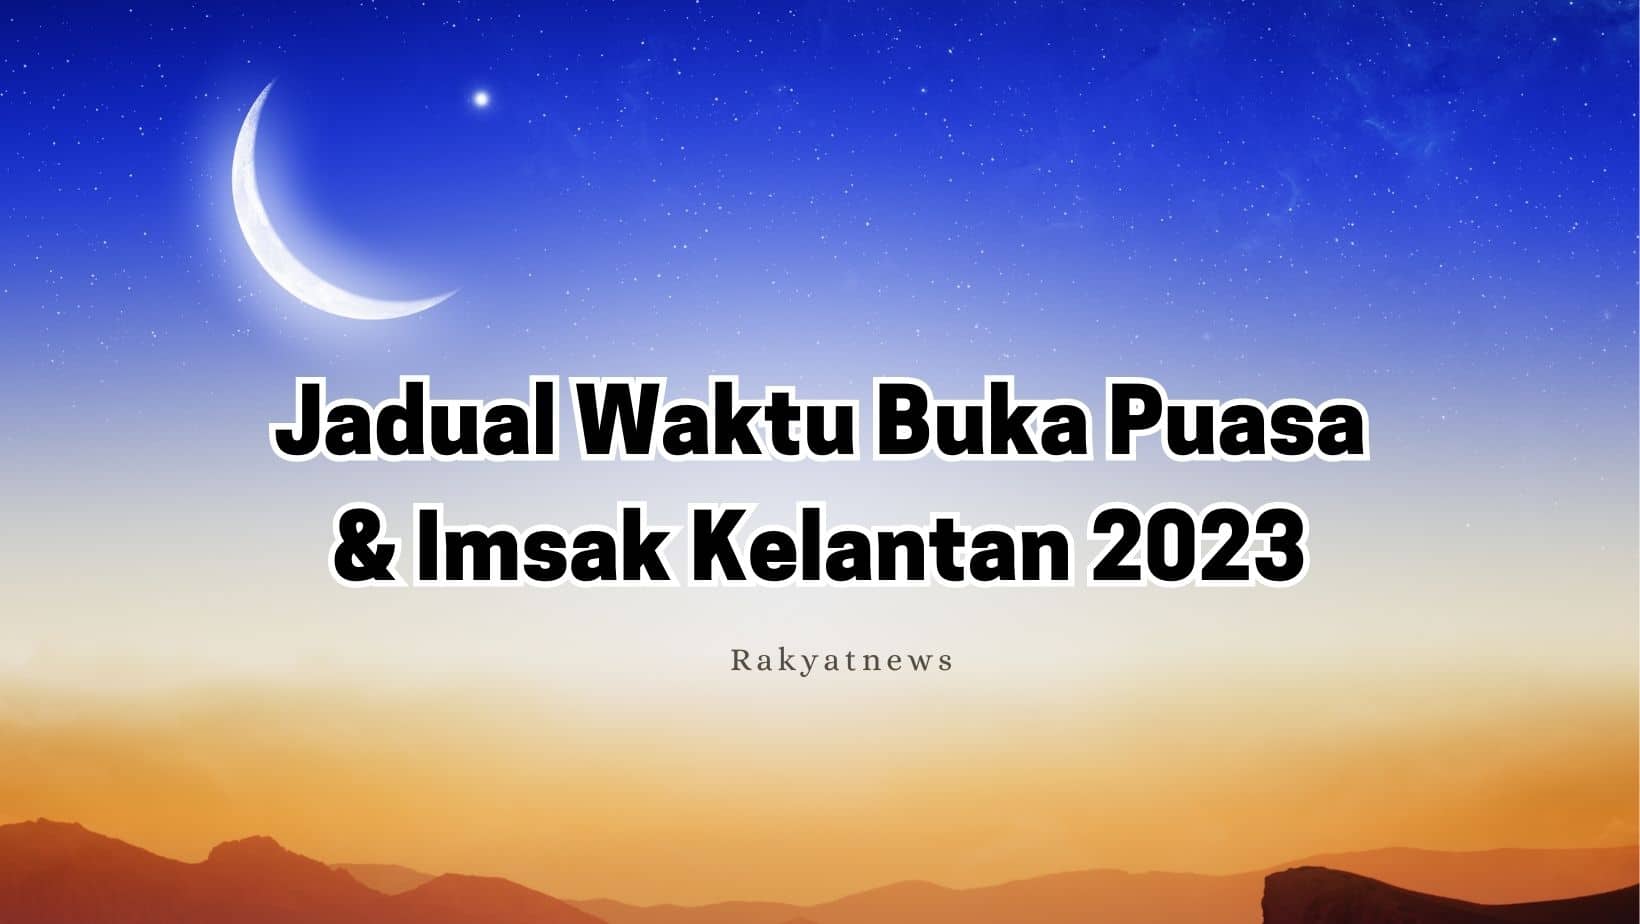 Jadual Waktu Berbuka Puasa & Imsak Kelantan 2023